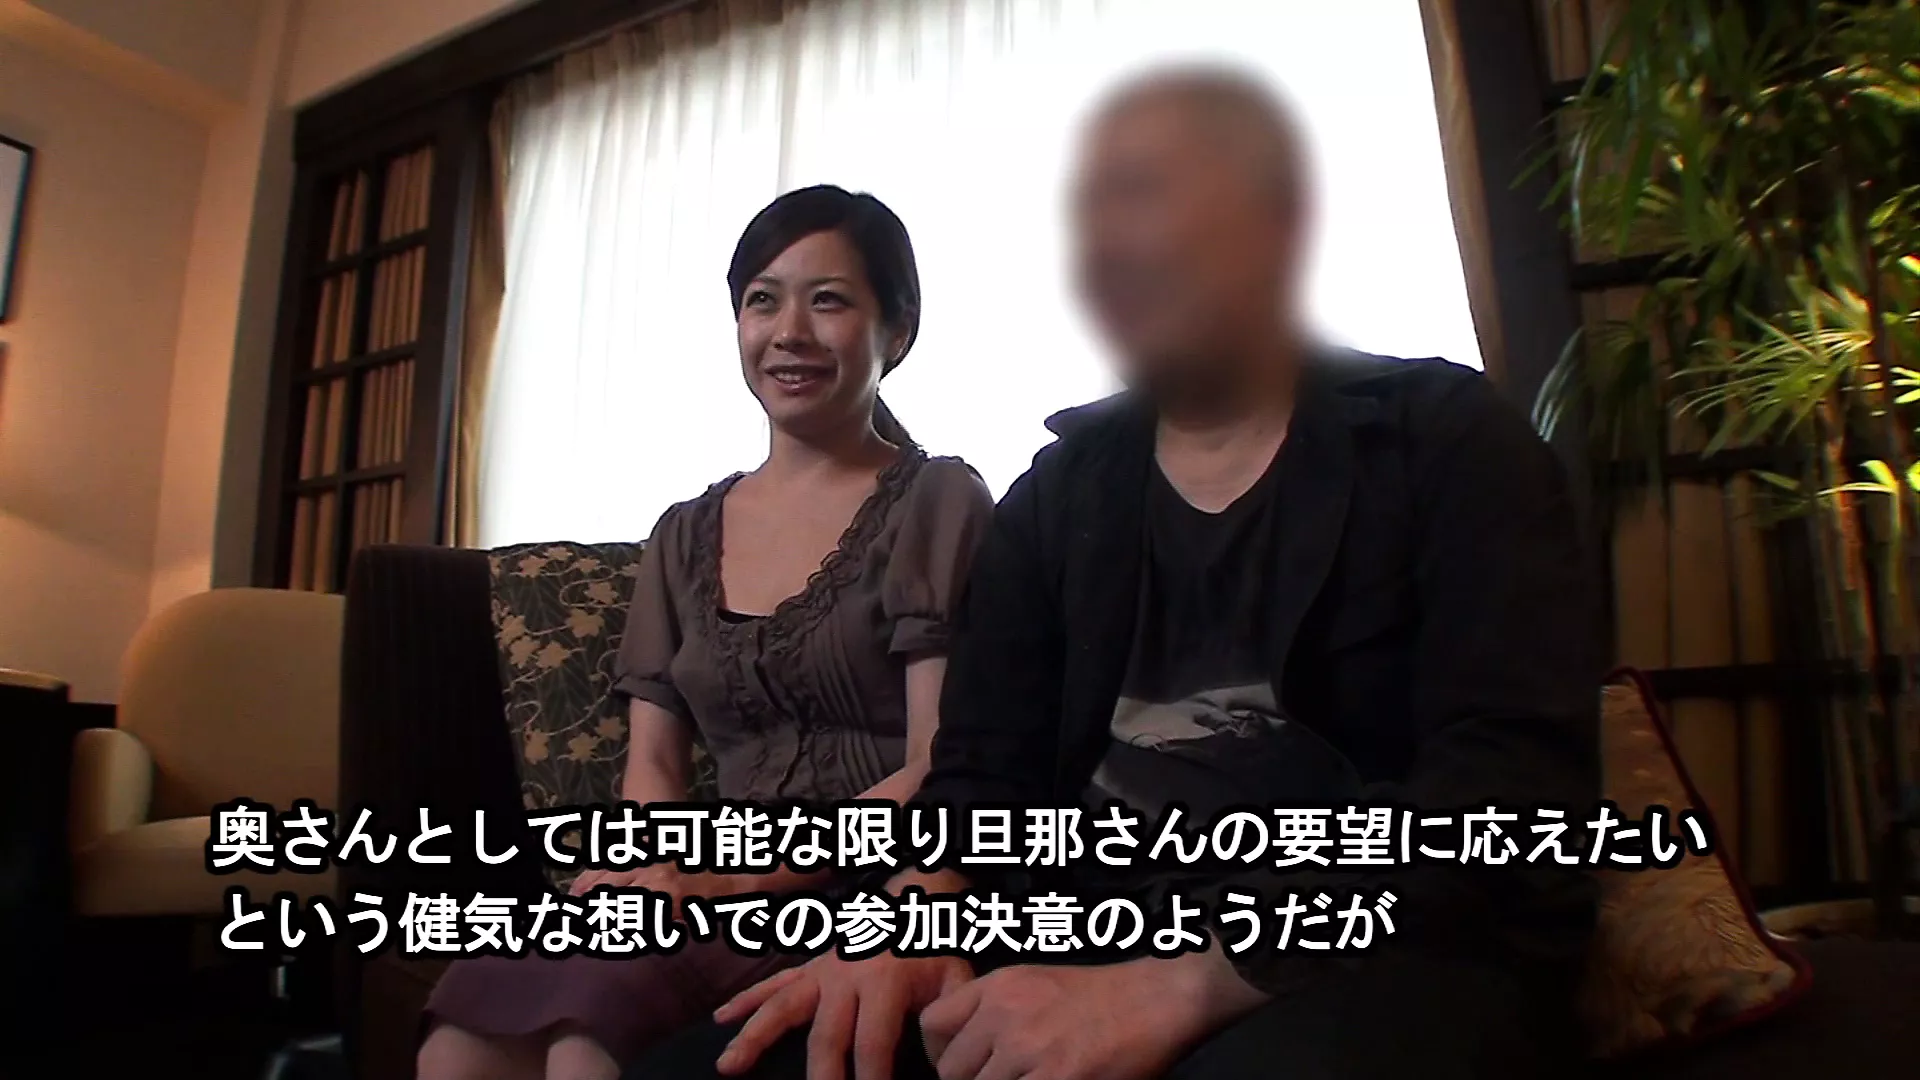 Vidéo de sexe amateur japonais dun mari partageant sa femme avec un autre homme en échange et sasseyant et regardant